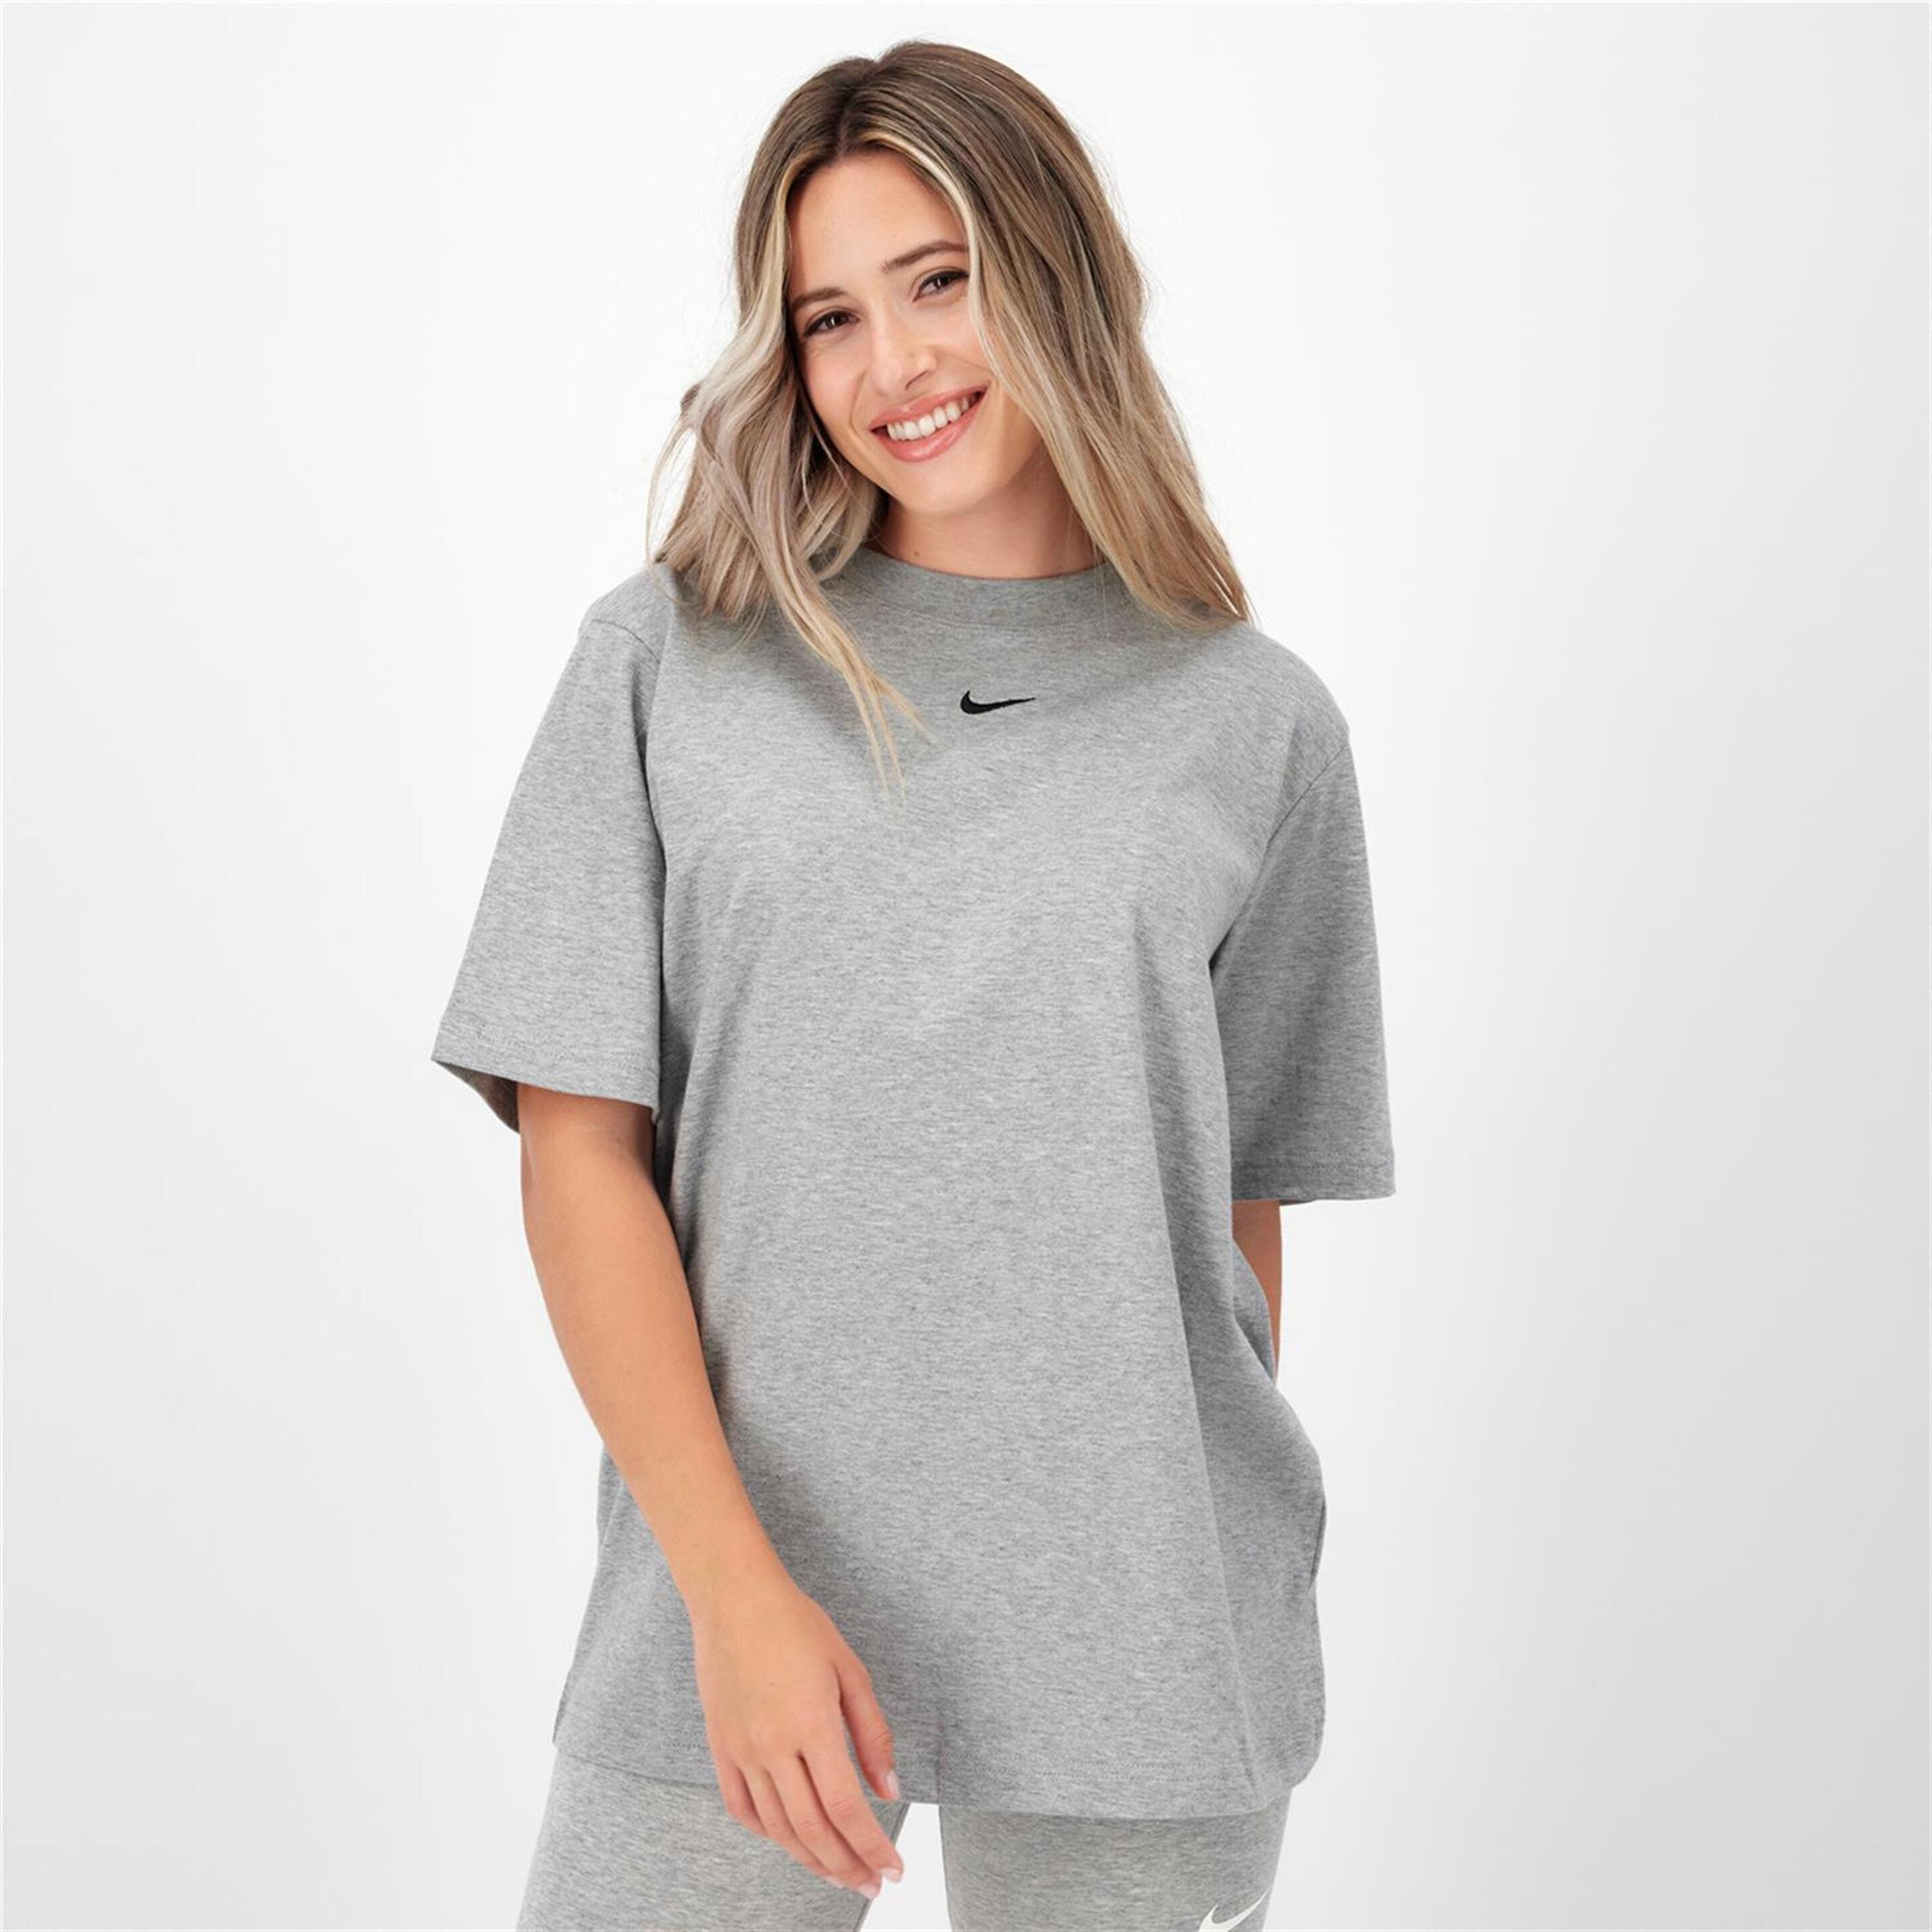 Camiseta Nike - gris - Camiseta Oversize Mujer